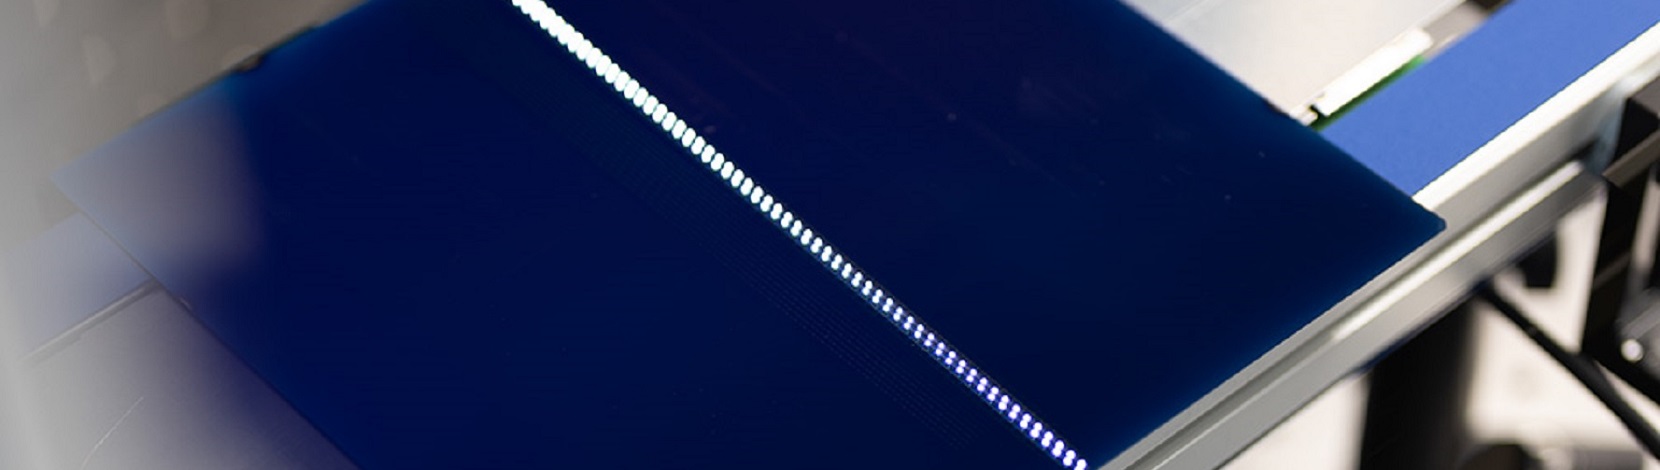 La tecnologia laser consente di velocizzare la produzione di wafer di grandi dimensioni – Electrosuisse